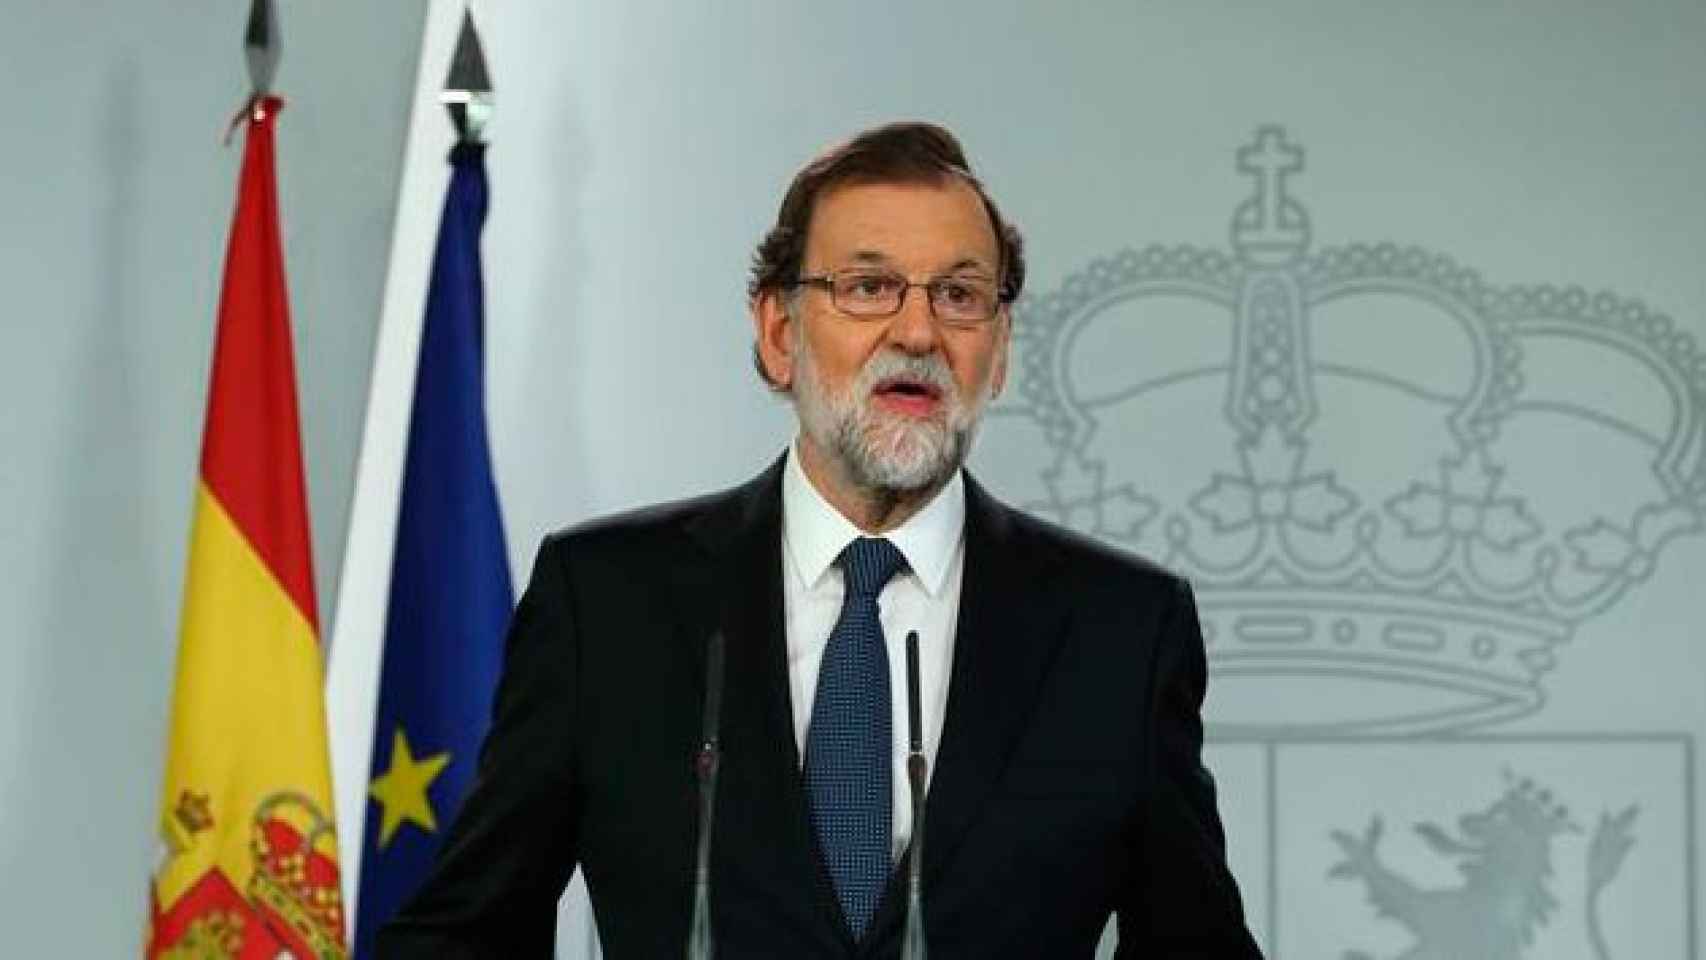 El presidente del Gobierno, Mariano Rajoy, durante la declaración institucional celebrada esta noche en La Moncloa tras el 1-O / EFE